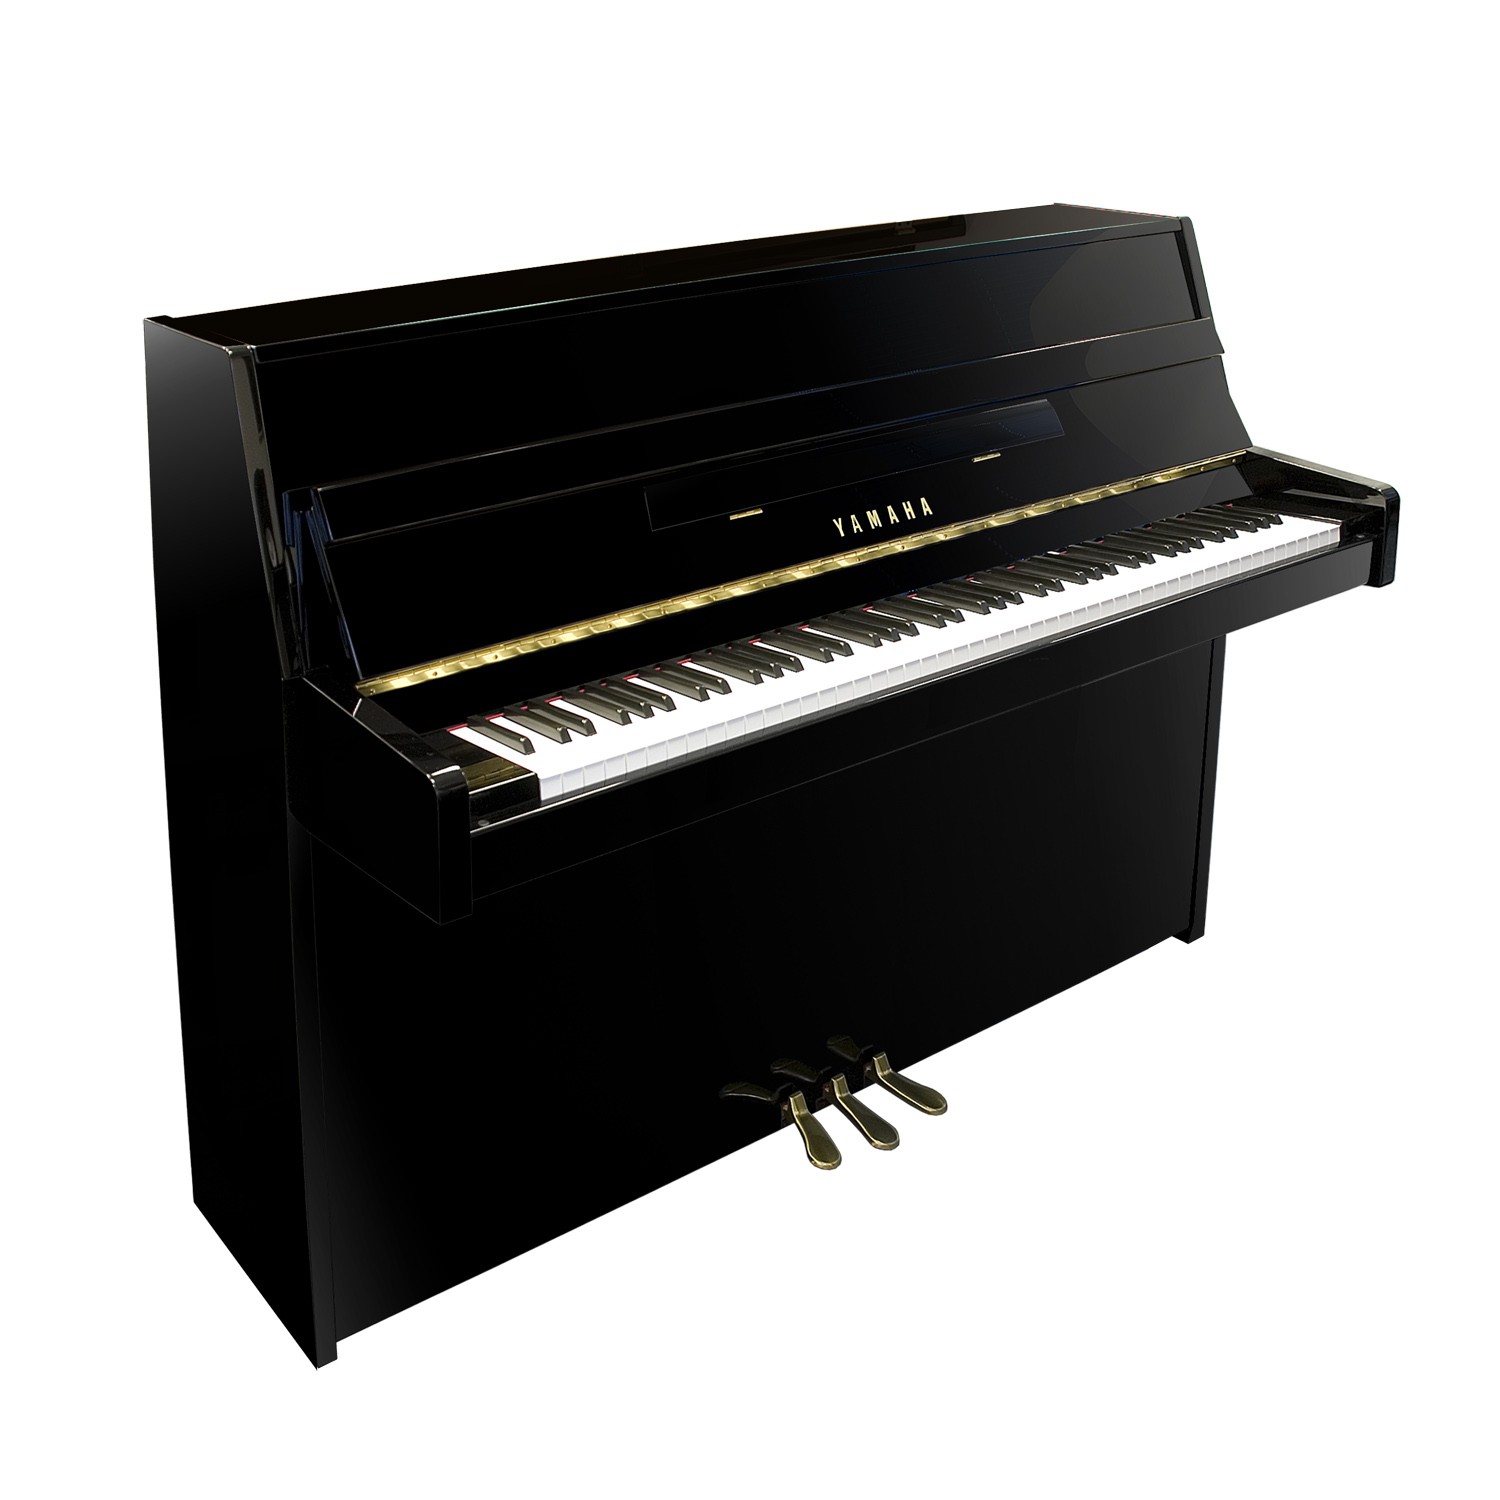 Yamaha B1 Klavier Musikinstrumente Und Musikzubehör.